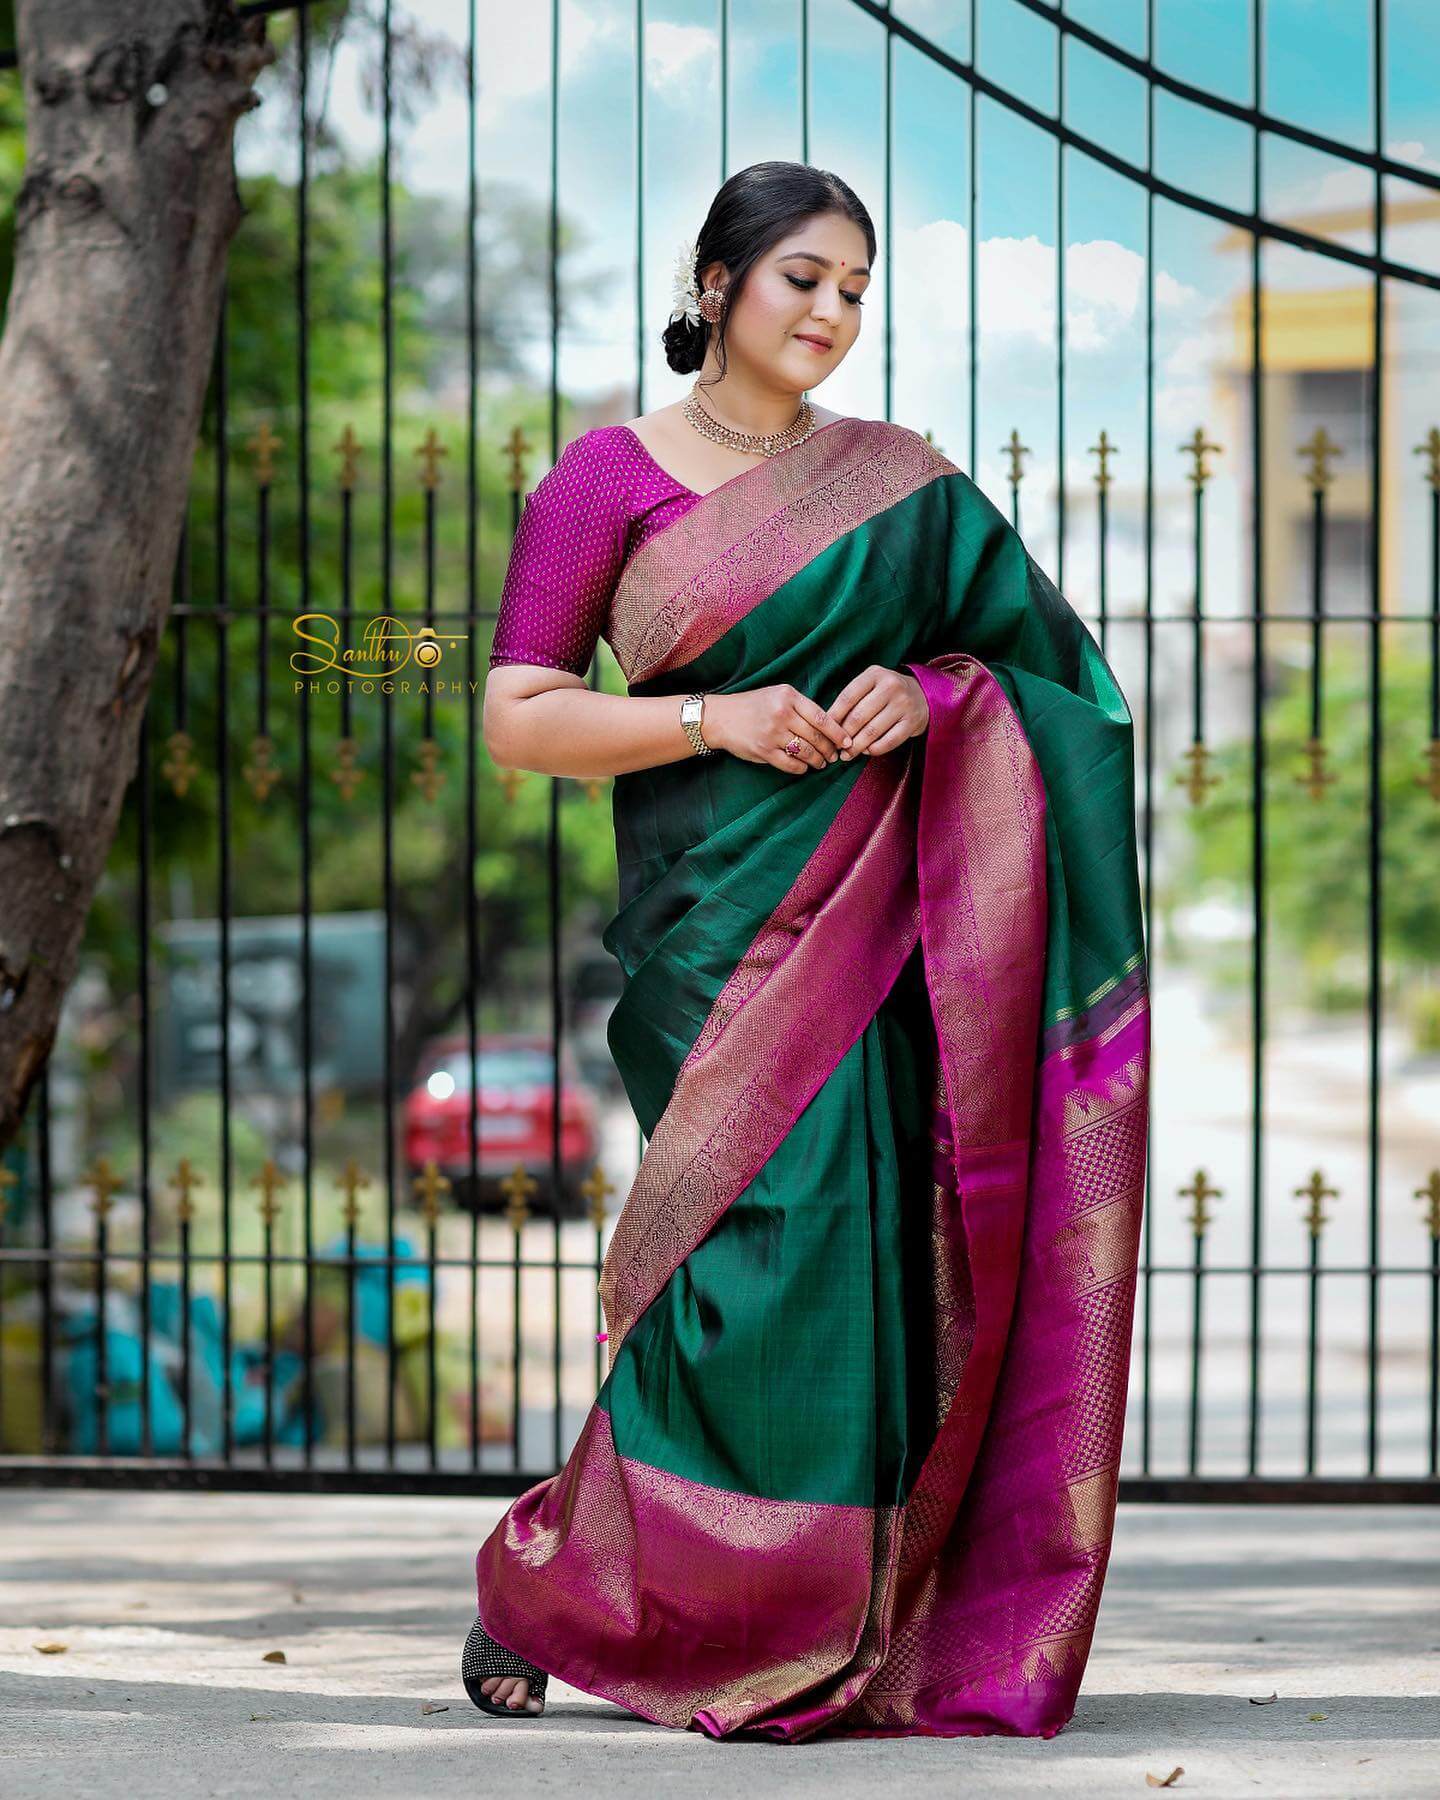 Meghana Raj Traditional Outfits And Looks - K4 Fashion